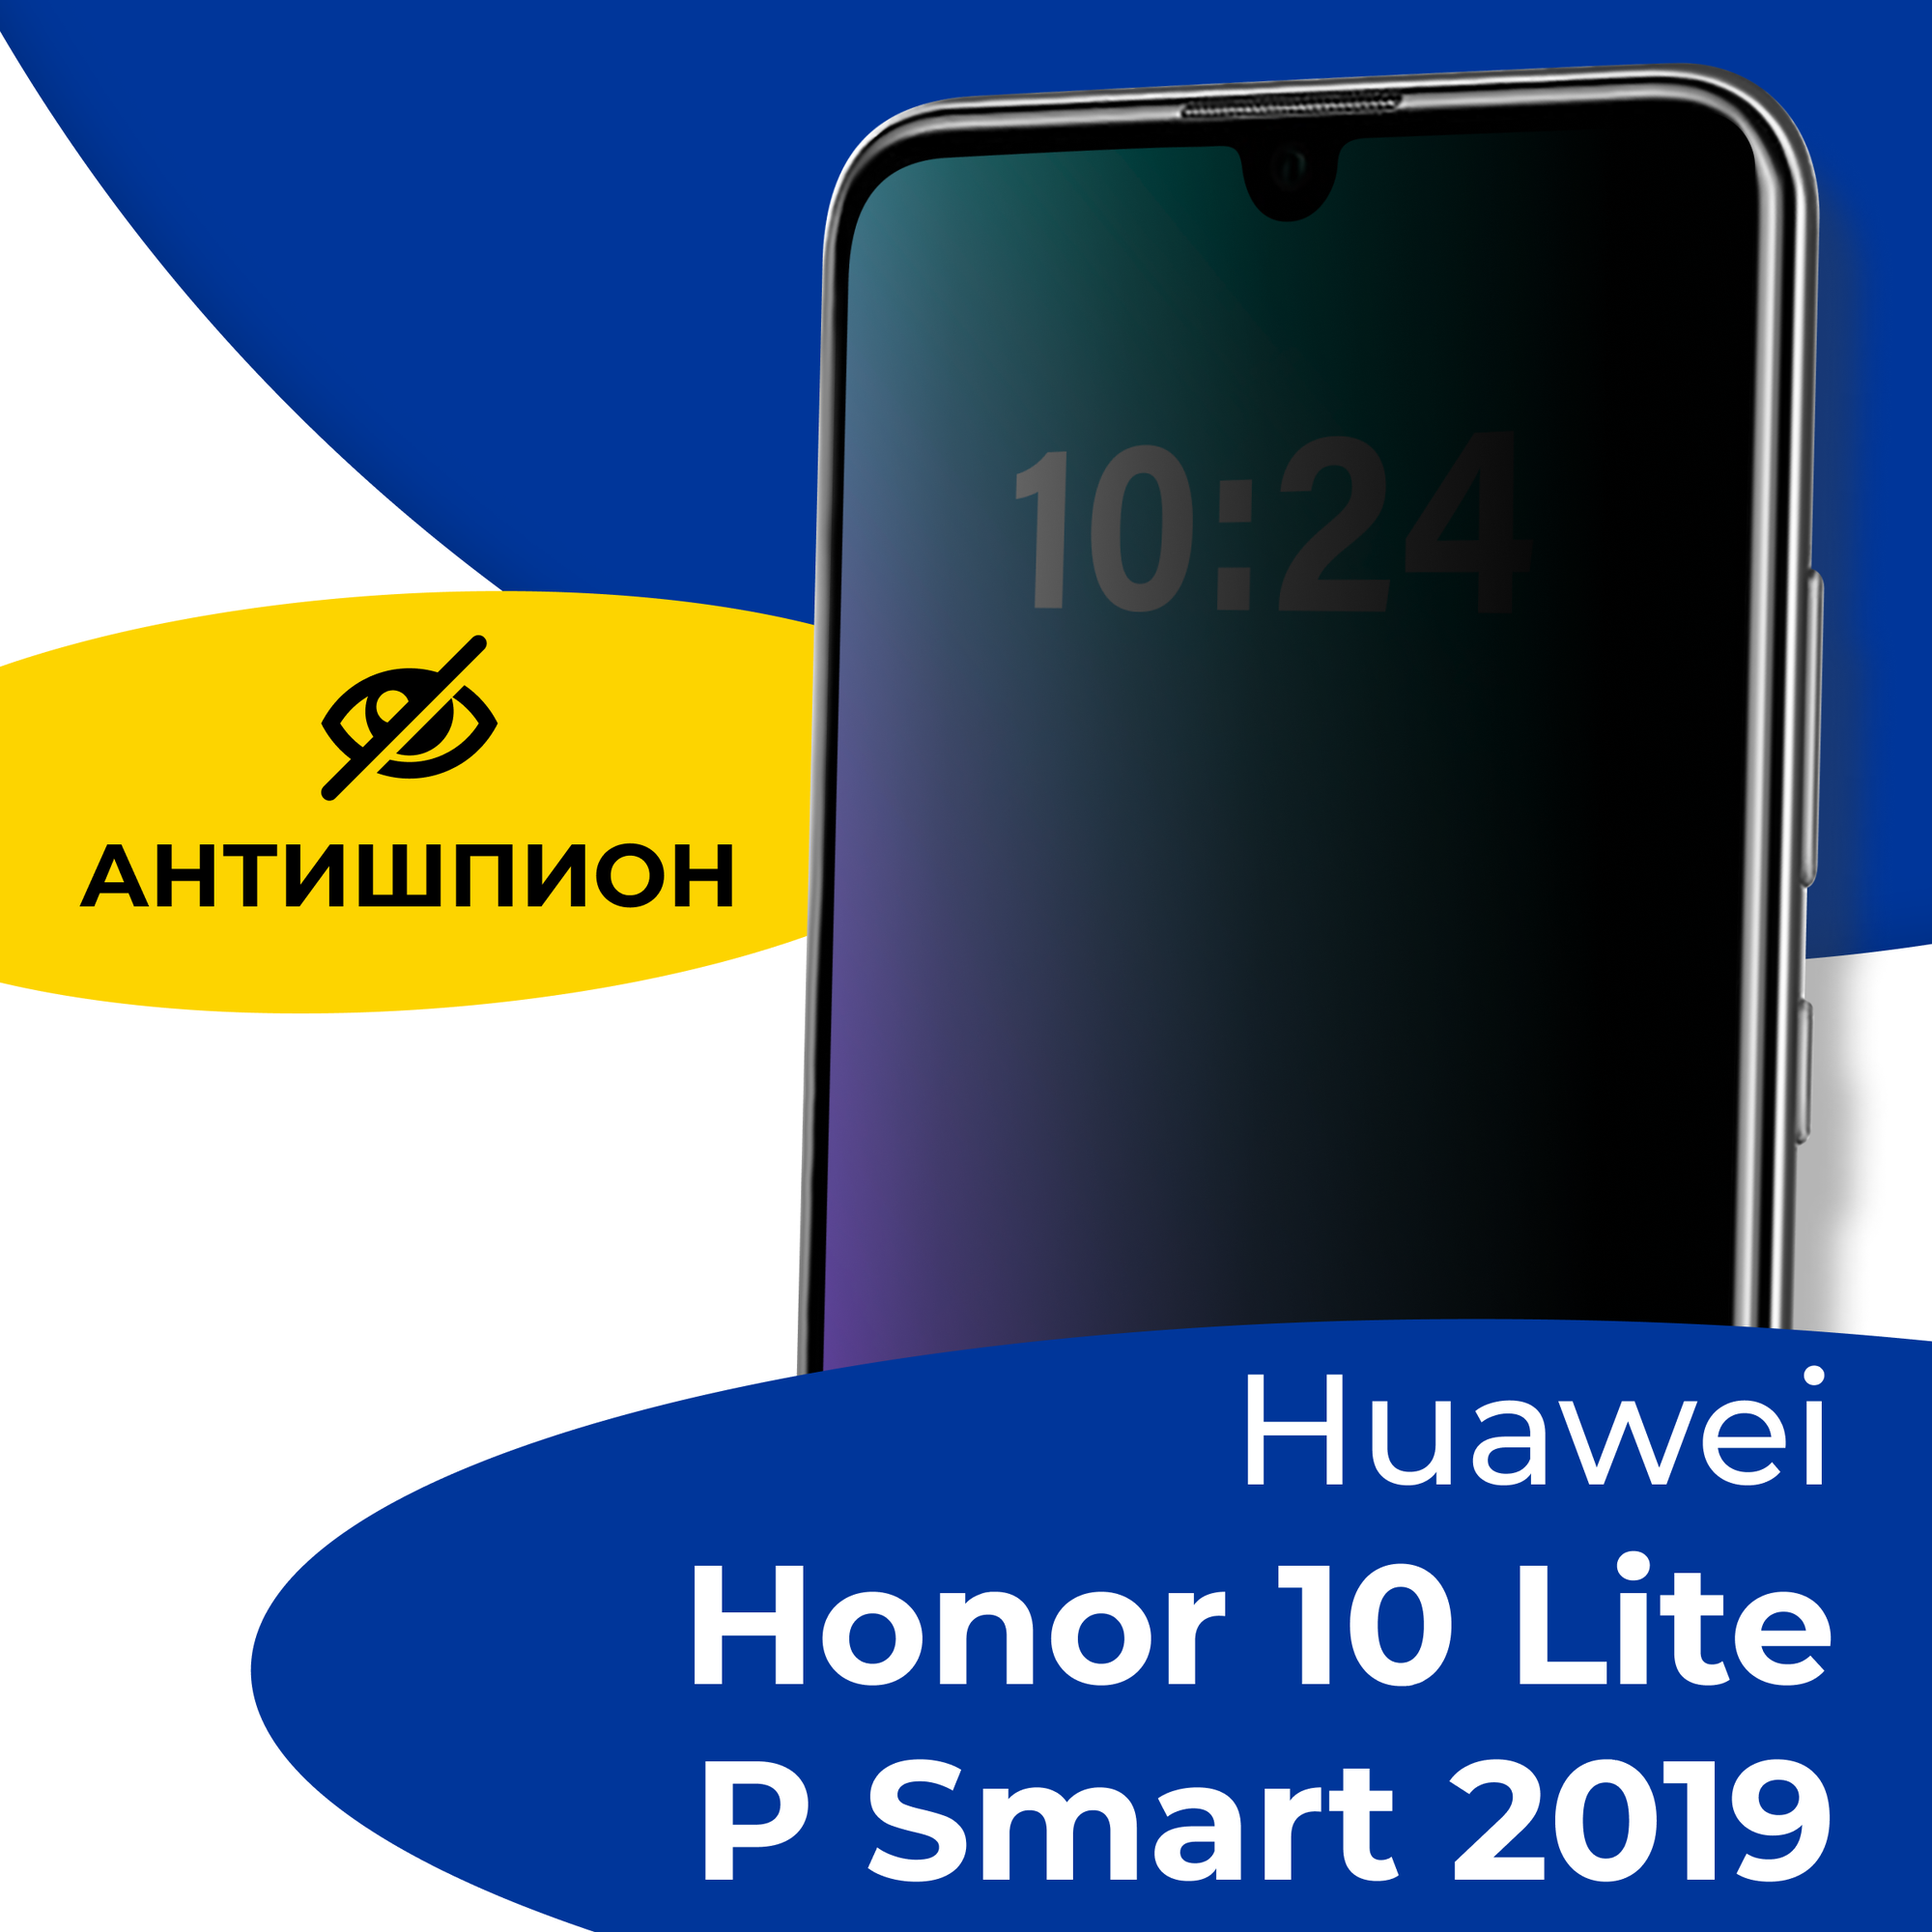 Защитное стекло Антишпион для телефона Huawei Honor 10 Lite и P smart 2019 / Противоударное стекло 5D на смартфон Хуавей Хонор 10 Лайт и Р Смарт